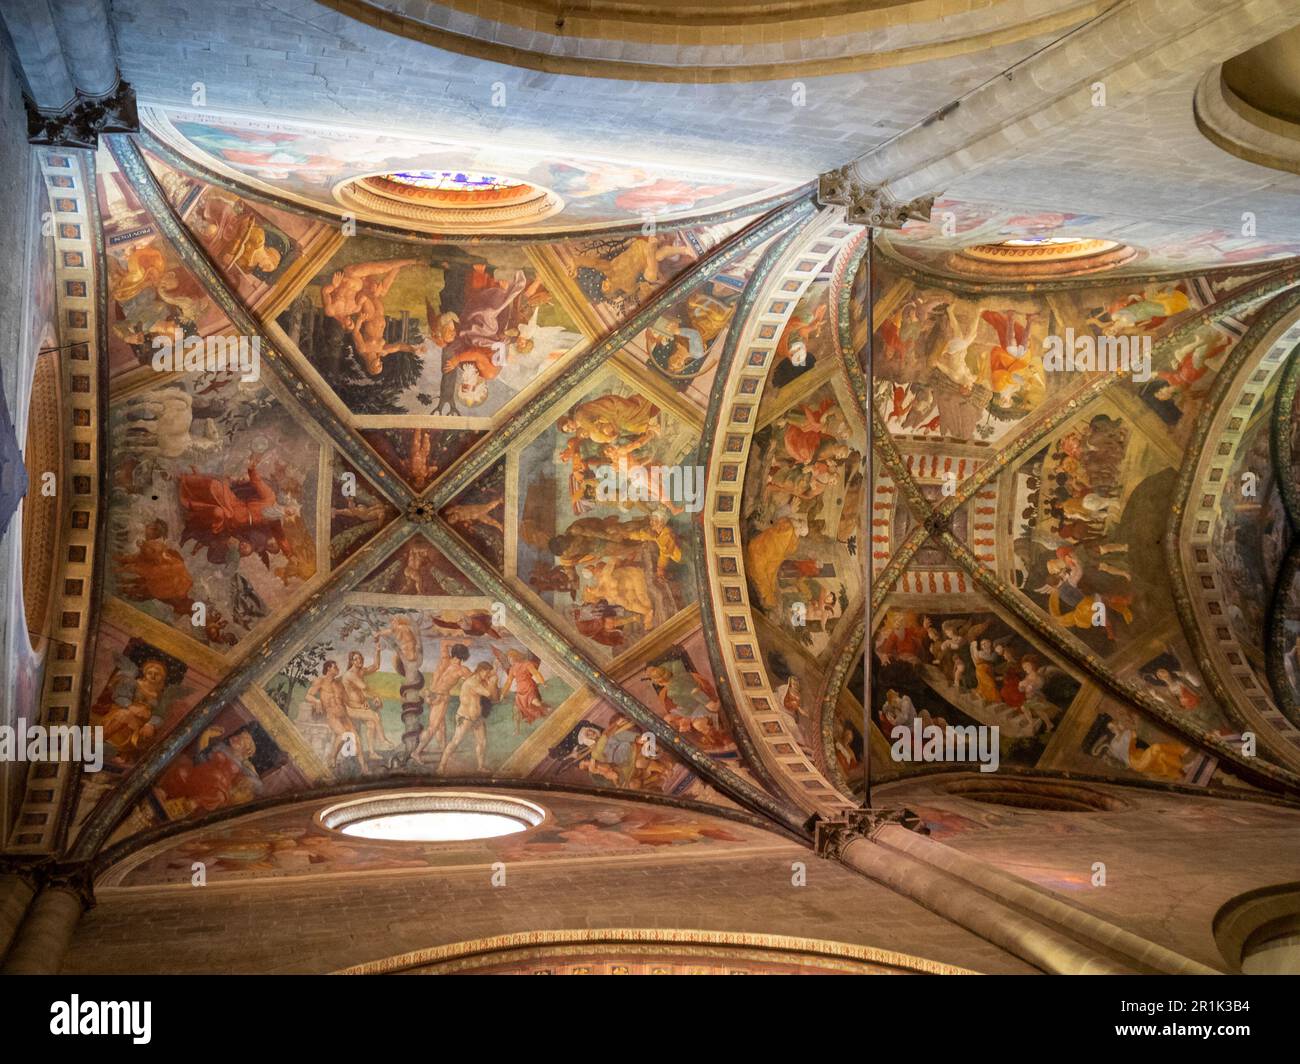 Soffitto a volta inguinale coperto da scene bilbliche affreschi di Guillaume de Marcillat, Cattedrale di Arezzo Foto Stock